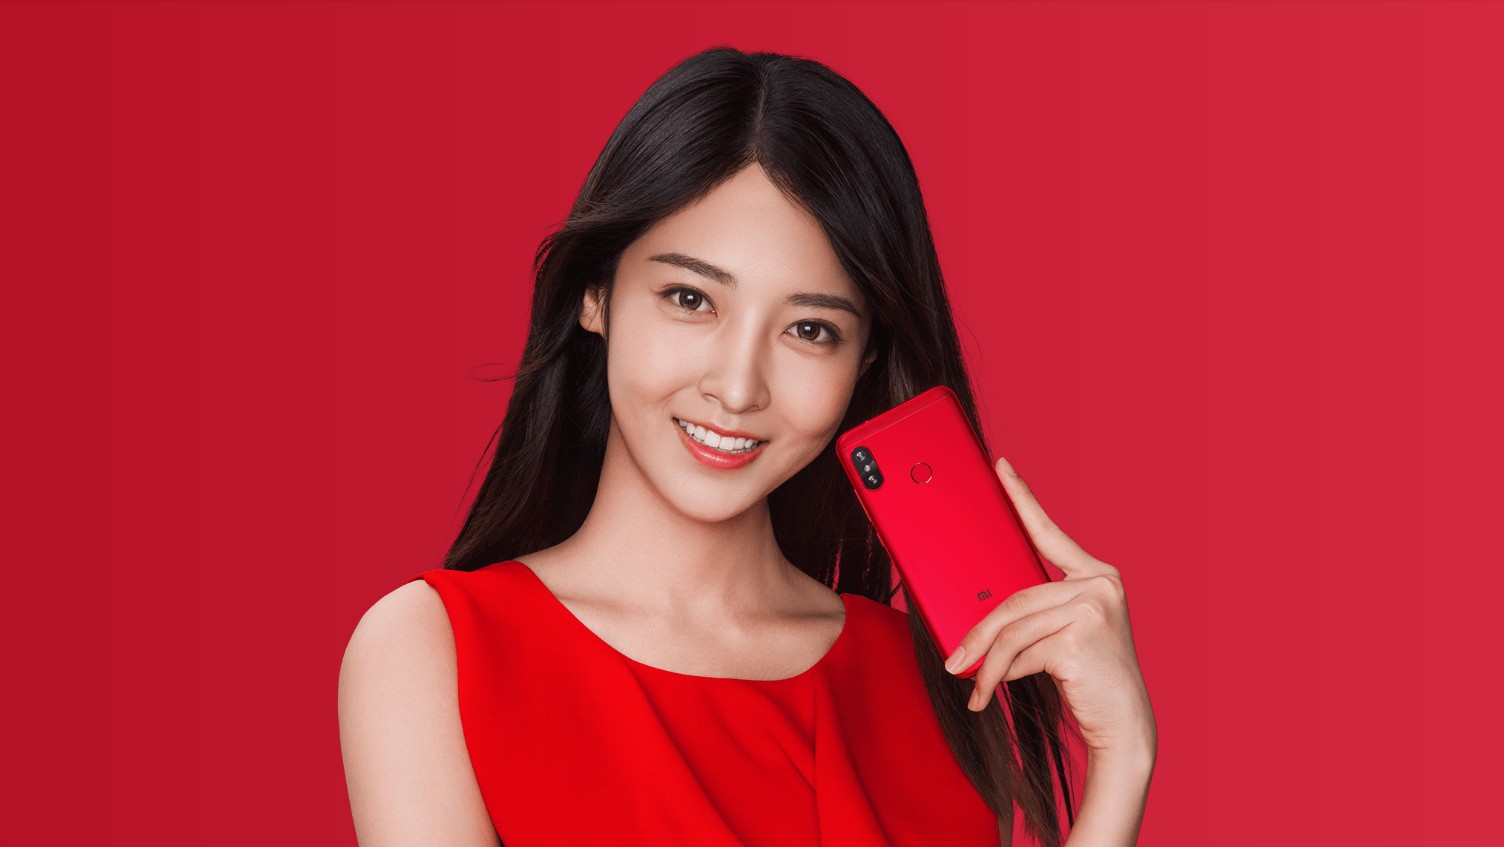 Анонсирован Xiaomi Redmi 6 Pro: вырез, 19 к 9 и прочие тренды